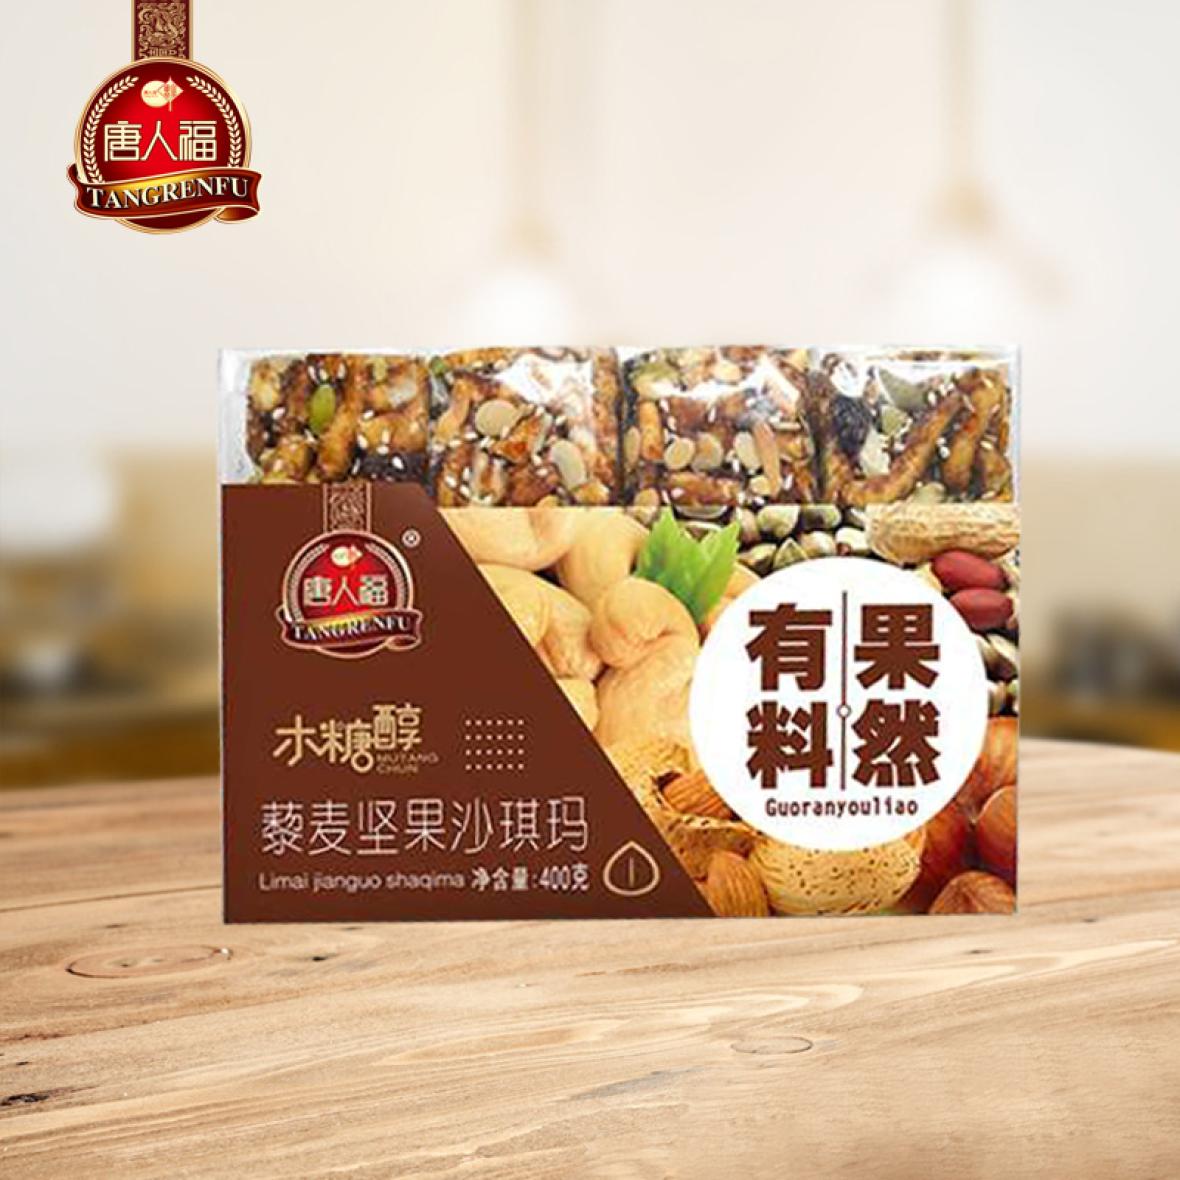 唐人福藜麦坚果沙琪玛-22年畅销品牌